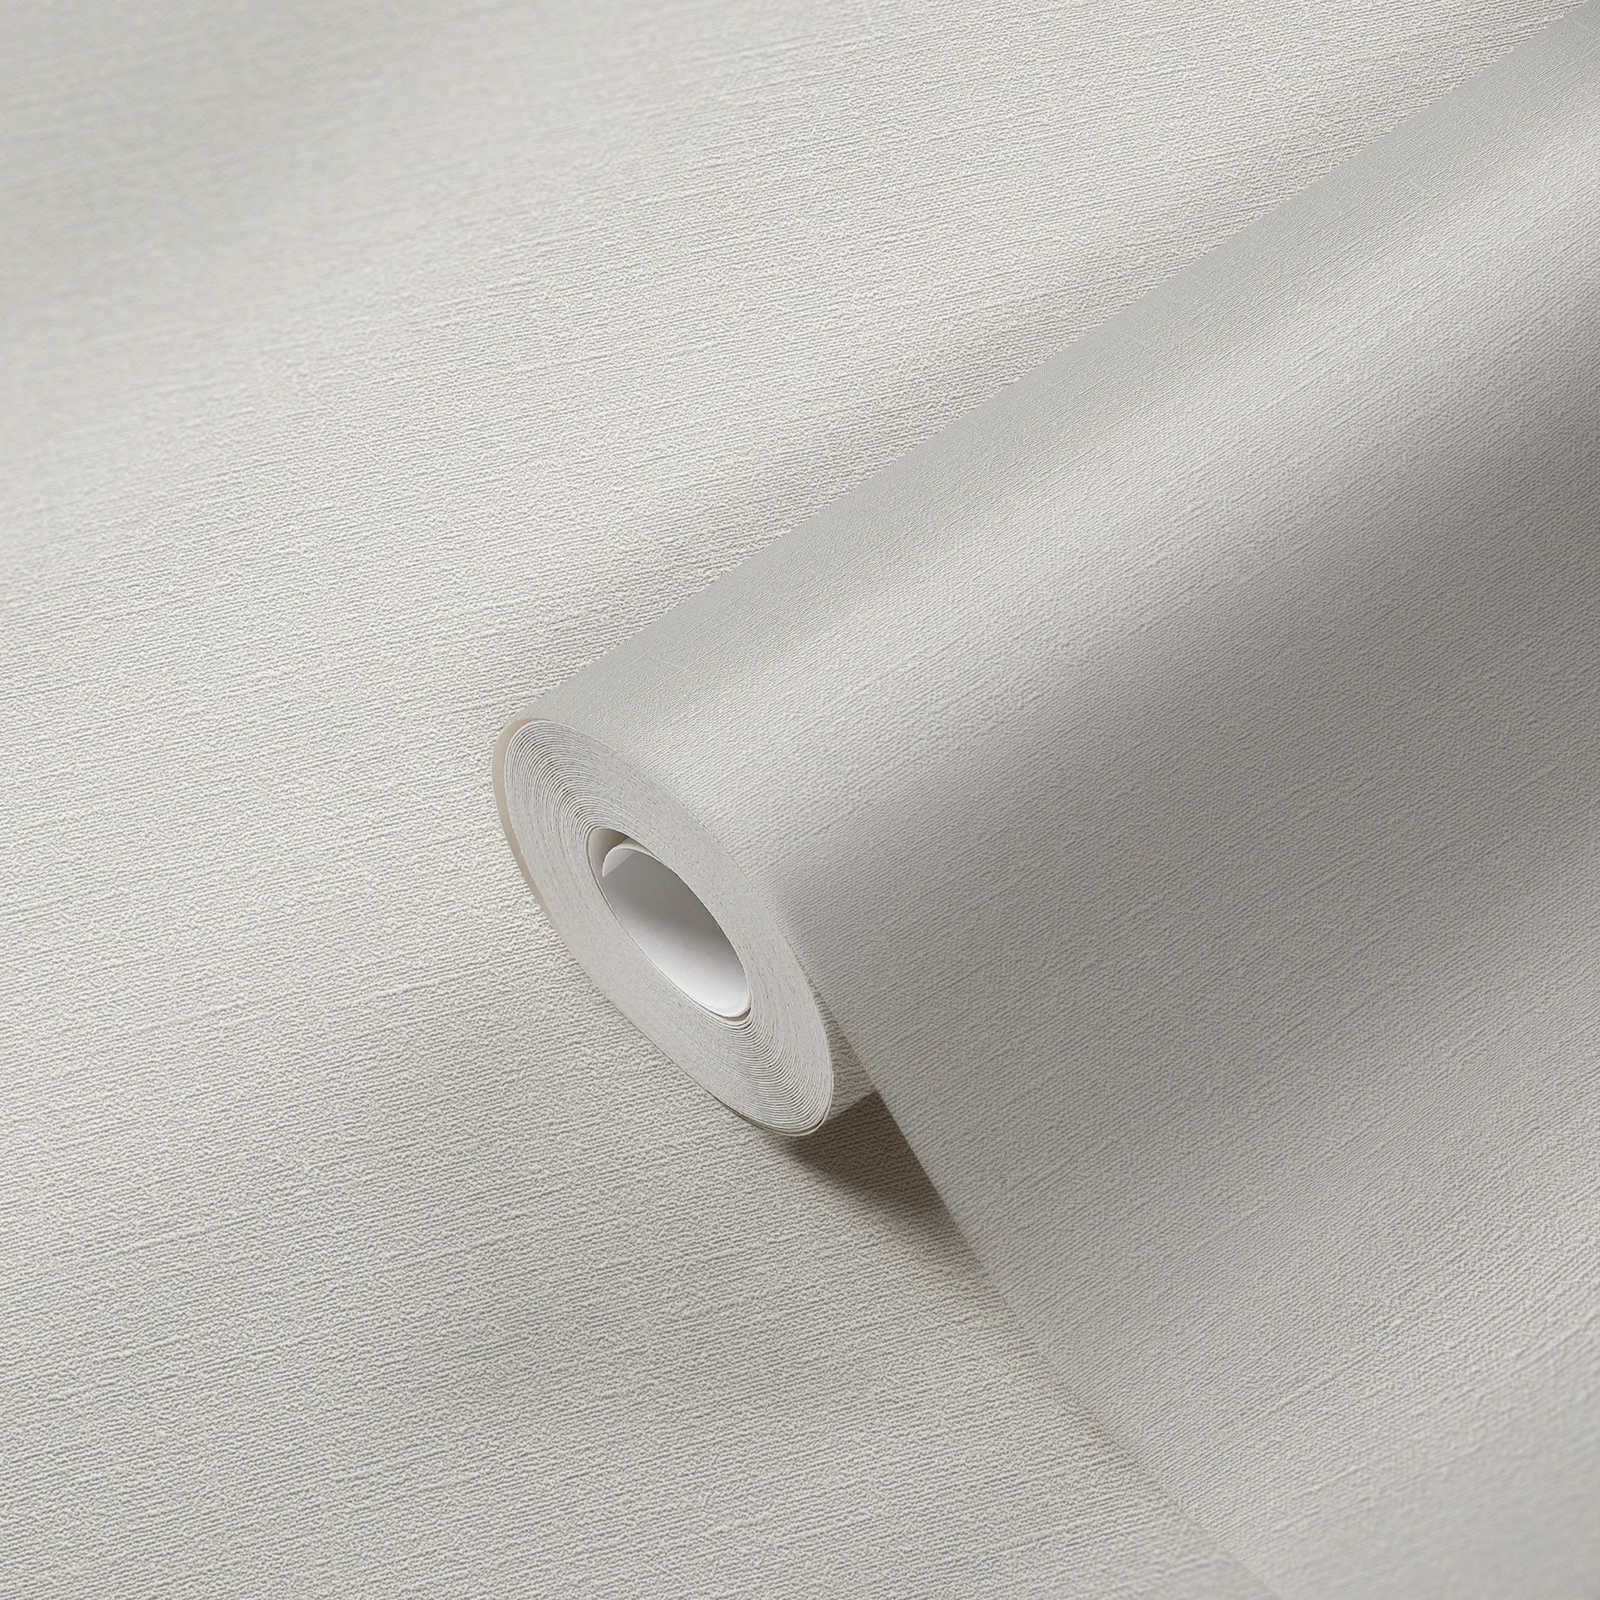             Papier peint à texture fine sans PVC - gris, blanc
        